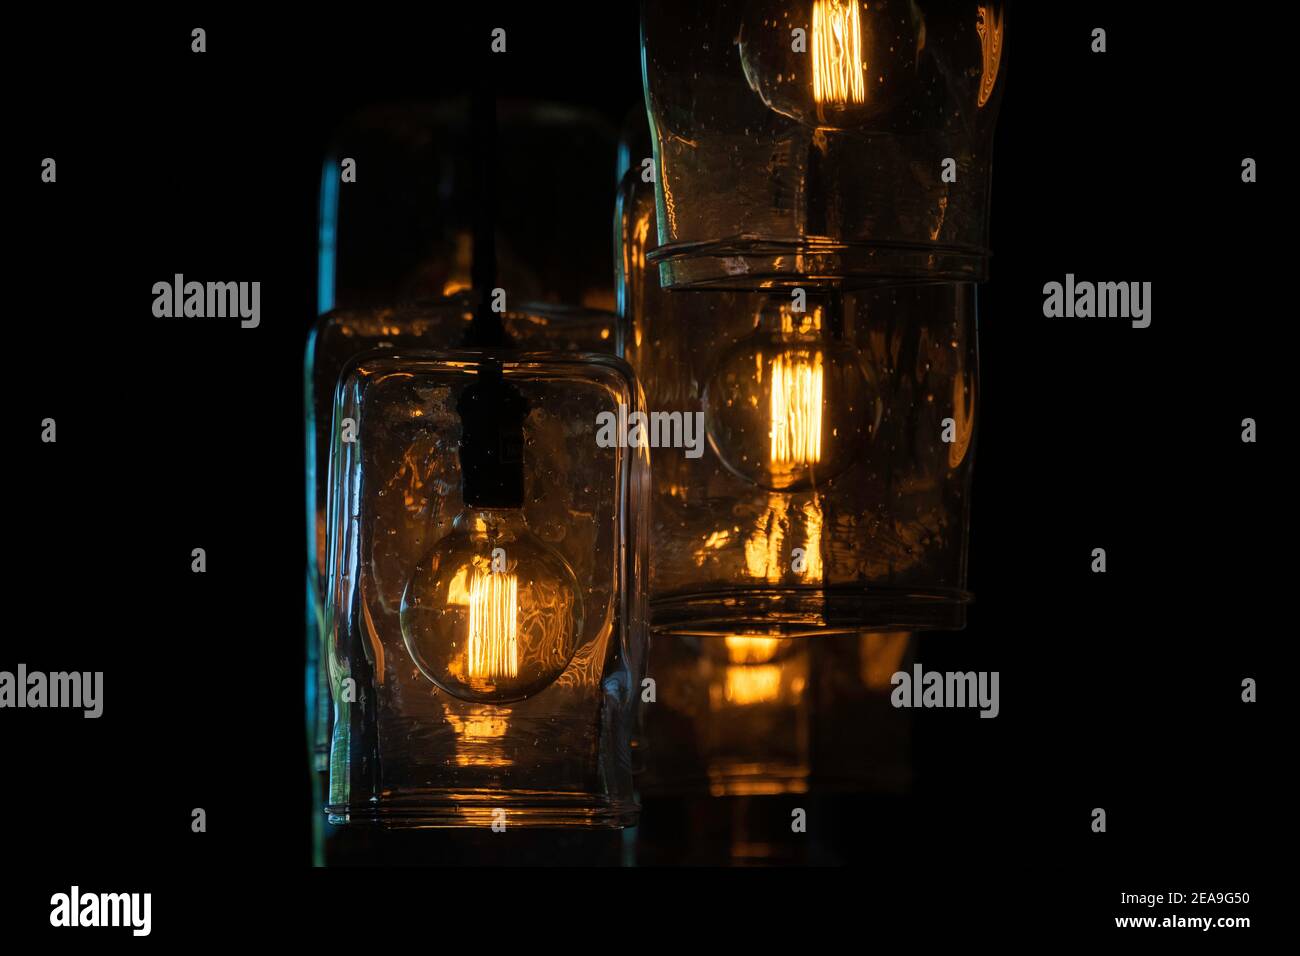 Alcune luci rustiche in stile occidentale pendono in un barroom. I filamenti sono disposti in verticale e emettono una luce arancione dorata. Foto Stock